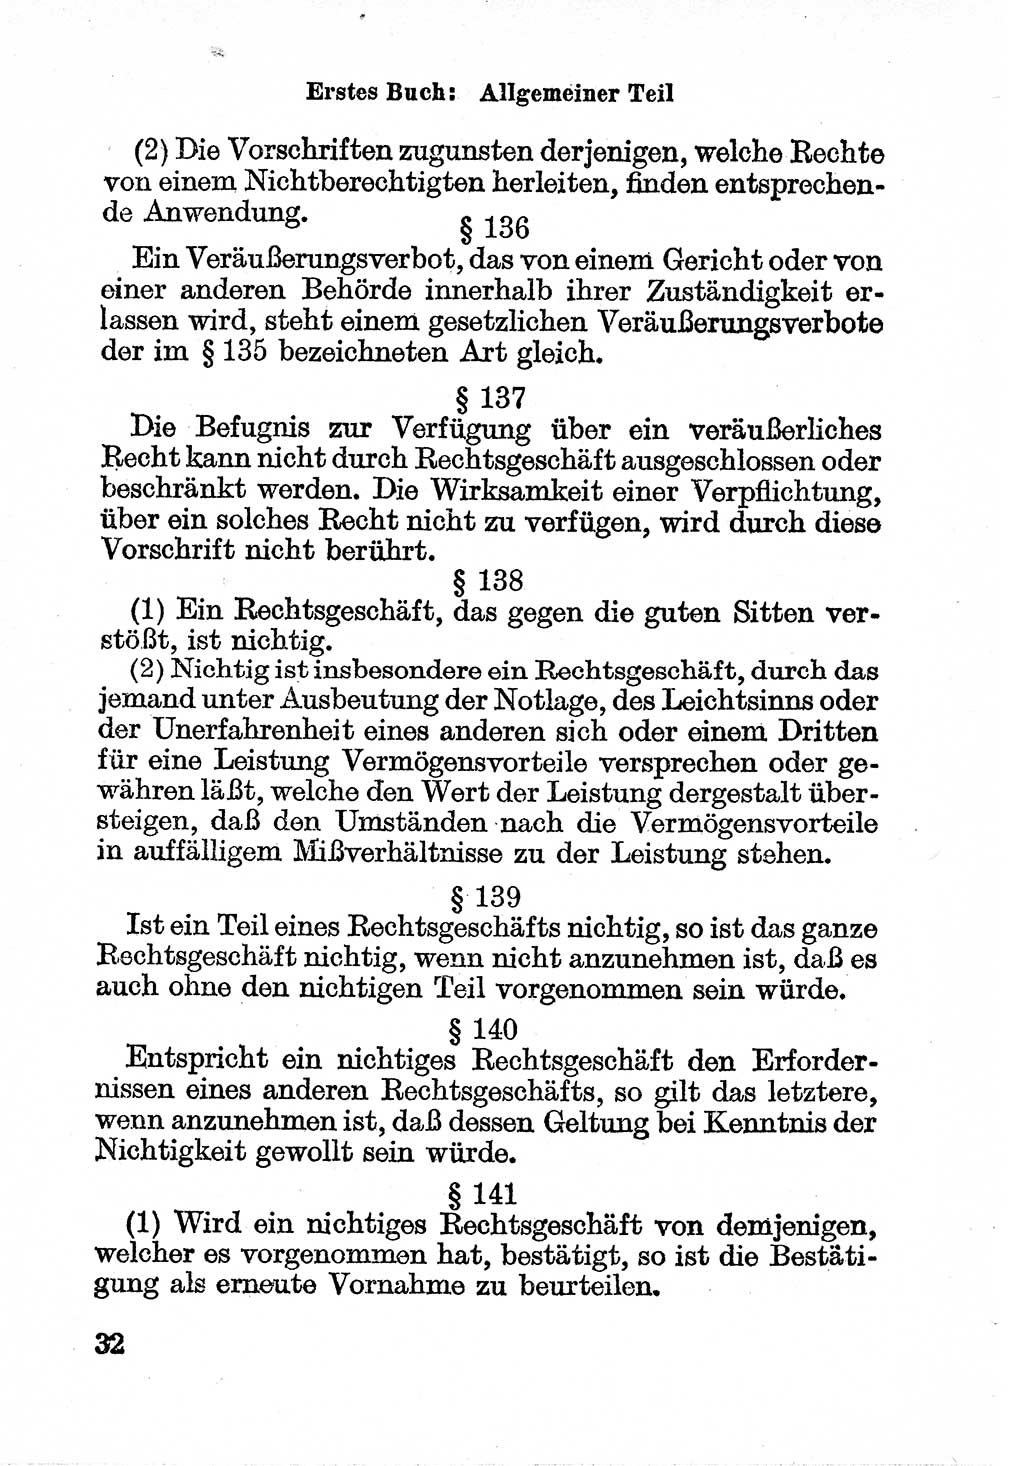 Bürgerliches Gesetzbuch (BGB) nebst wichtigen Nebengesetzen [Deutsche Demokratische Republik (DDR)] 1956, Seite 32 (BGB Nebenges. DDR 1956, S. 32)